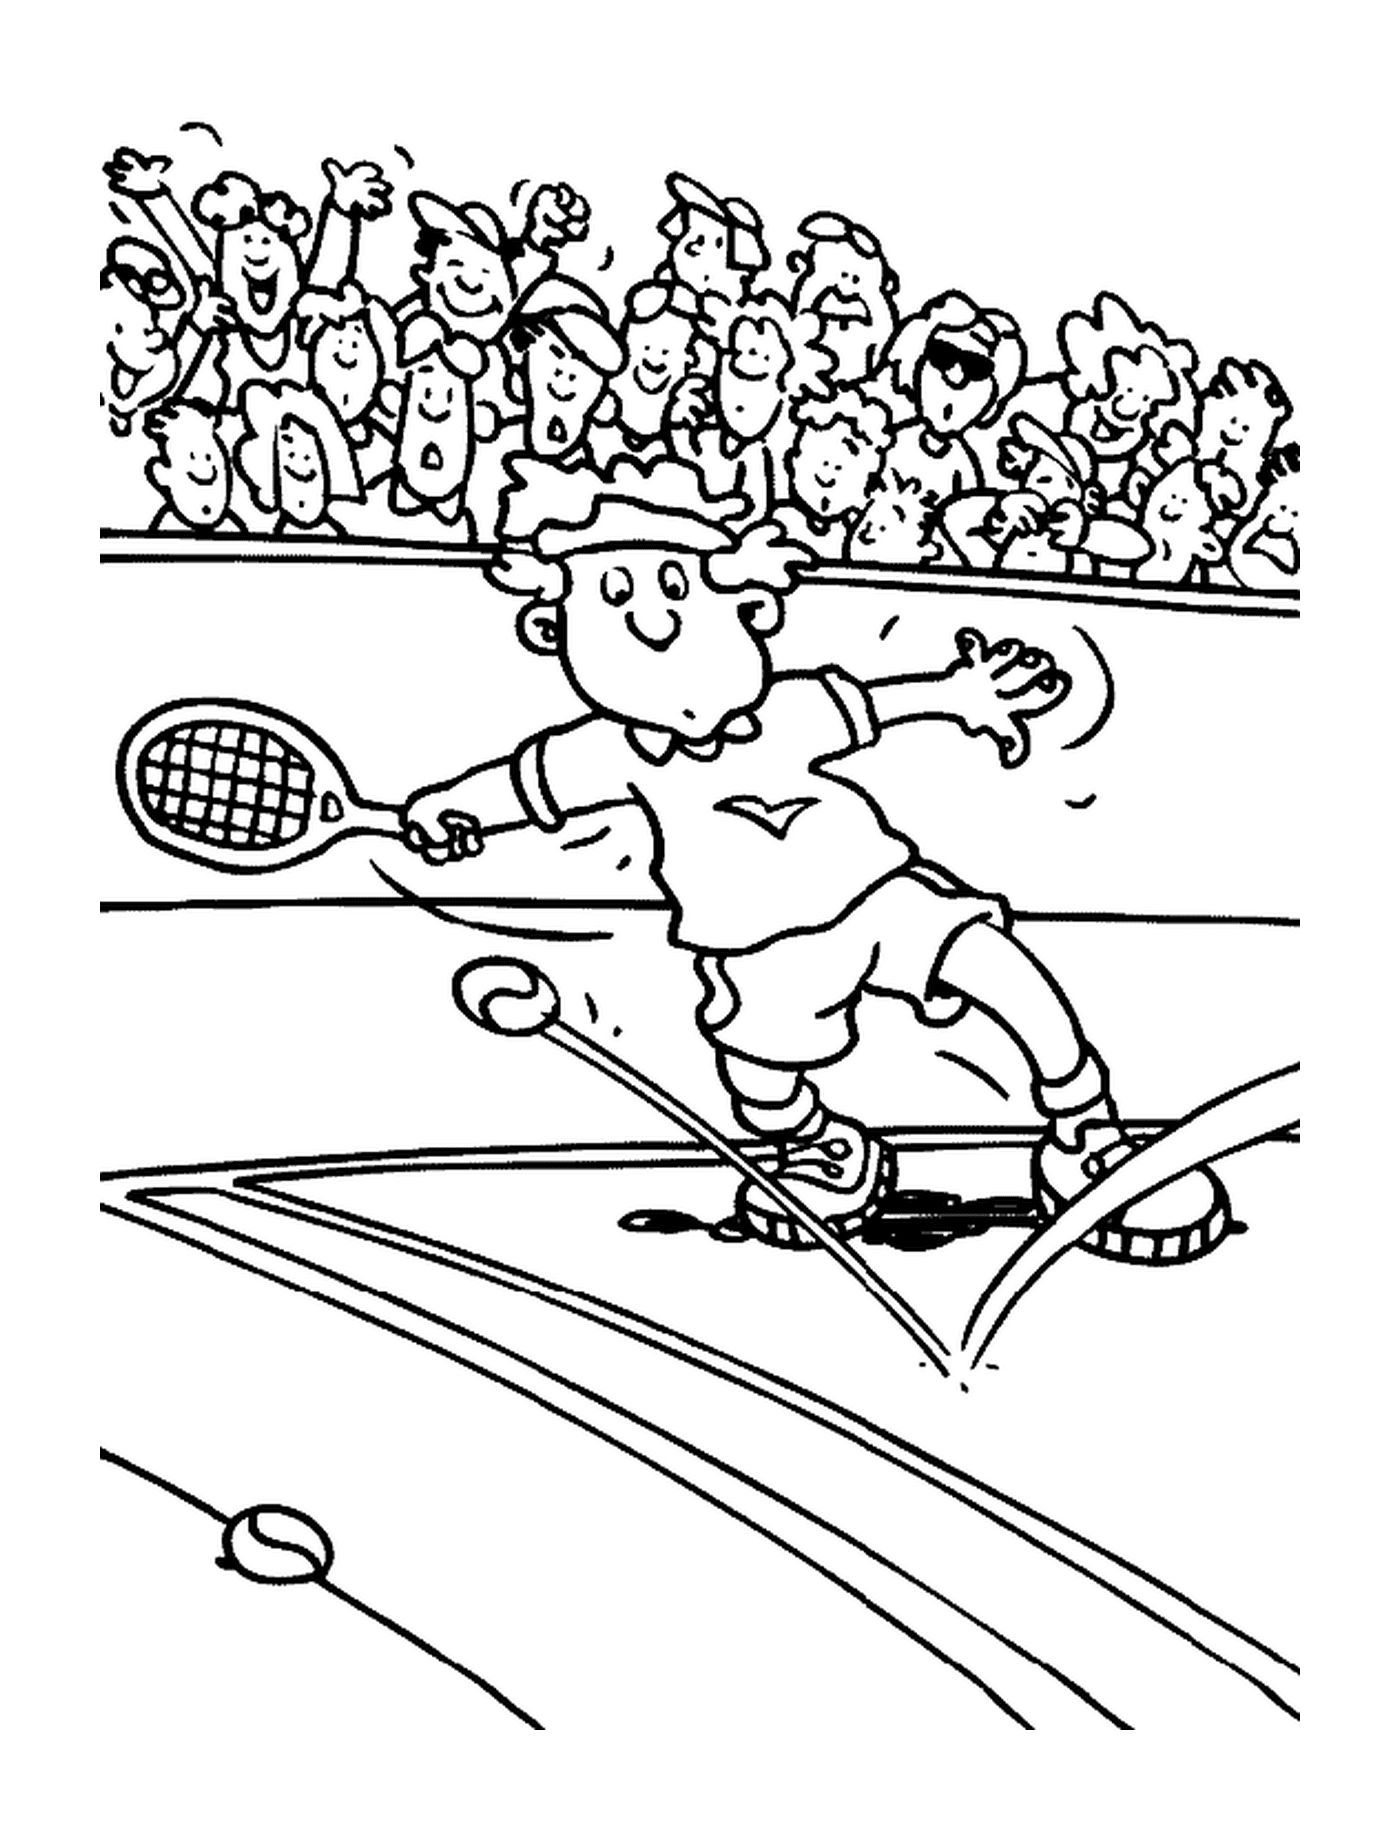  Un hombre en acción de tenis 